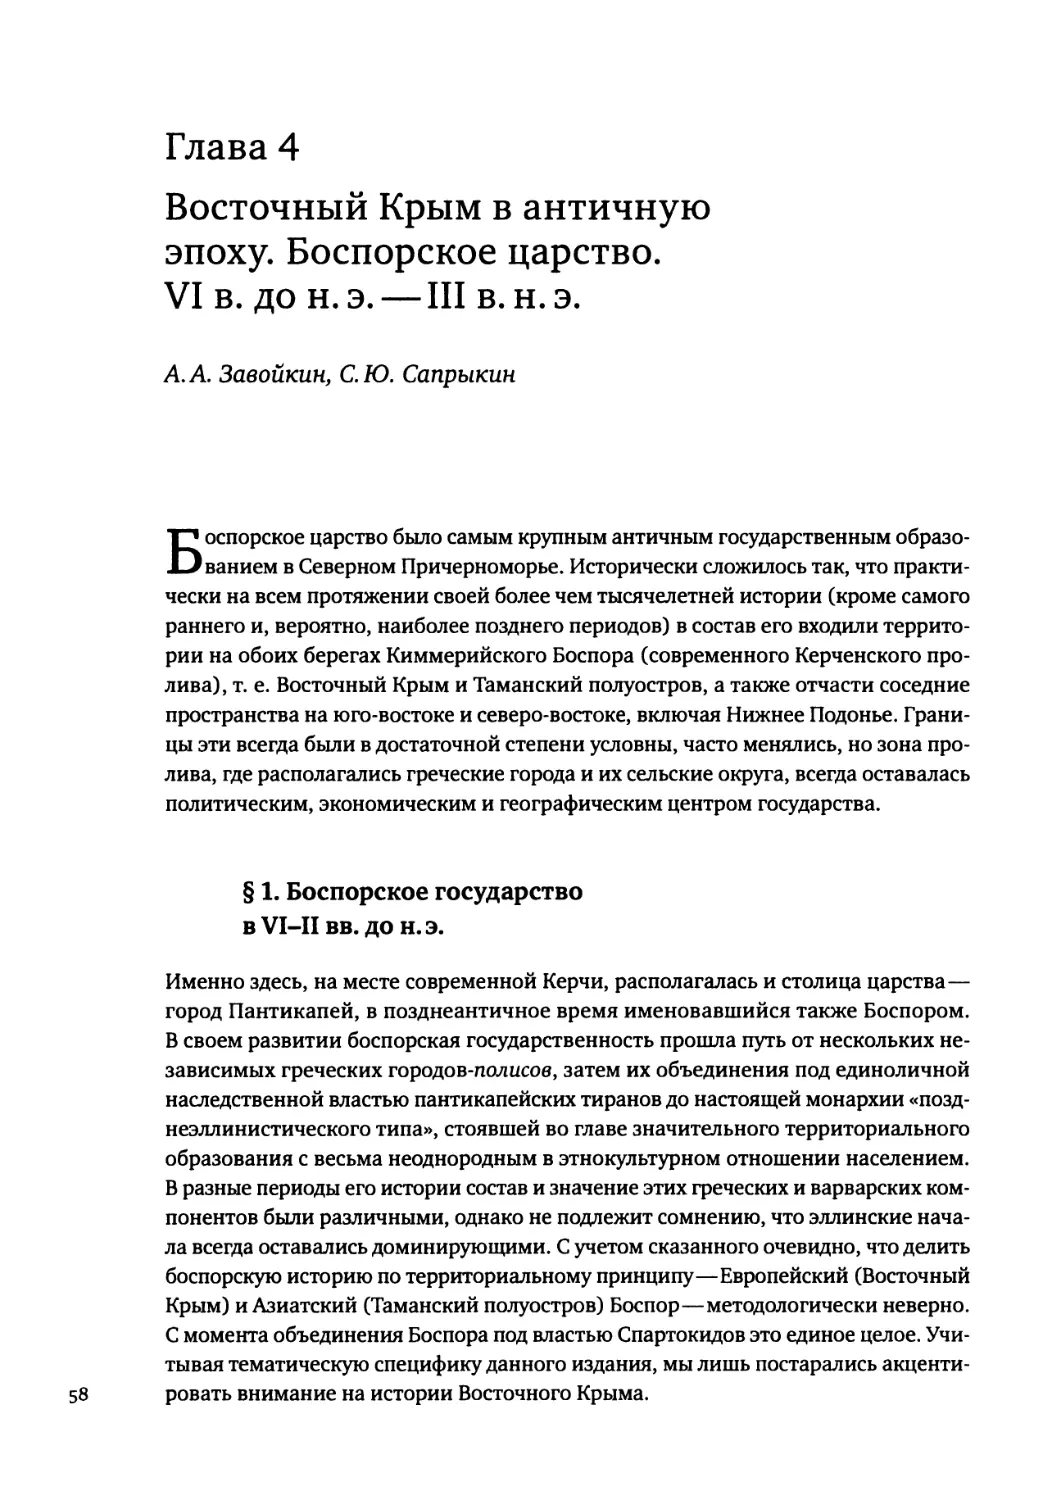 Глава 4. Восточный Крым в античную эпоху. Боспорское царство. VI в. до н. э.—III в. н. э